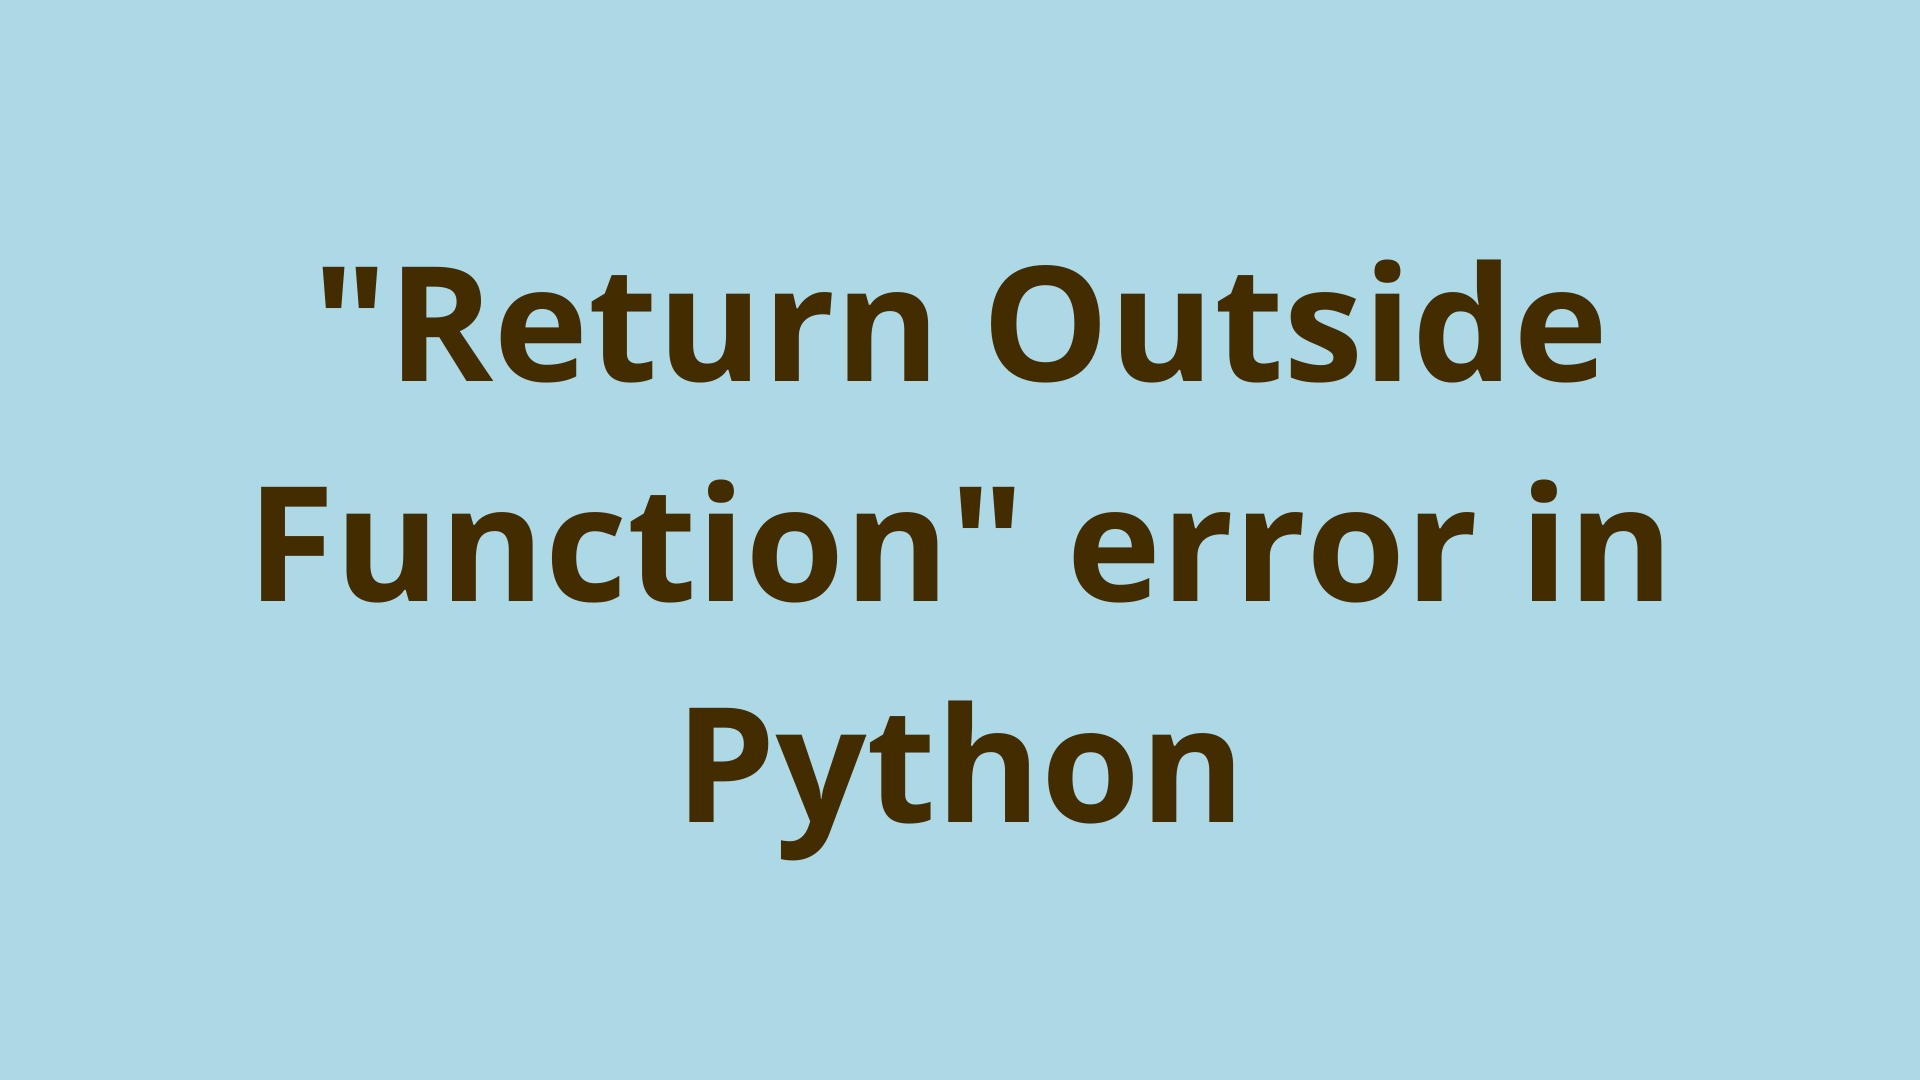 Return Outside Function error in Python